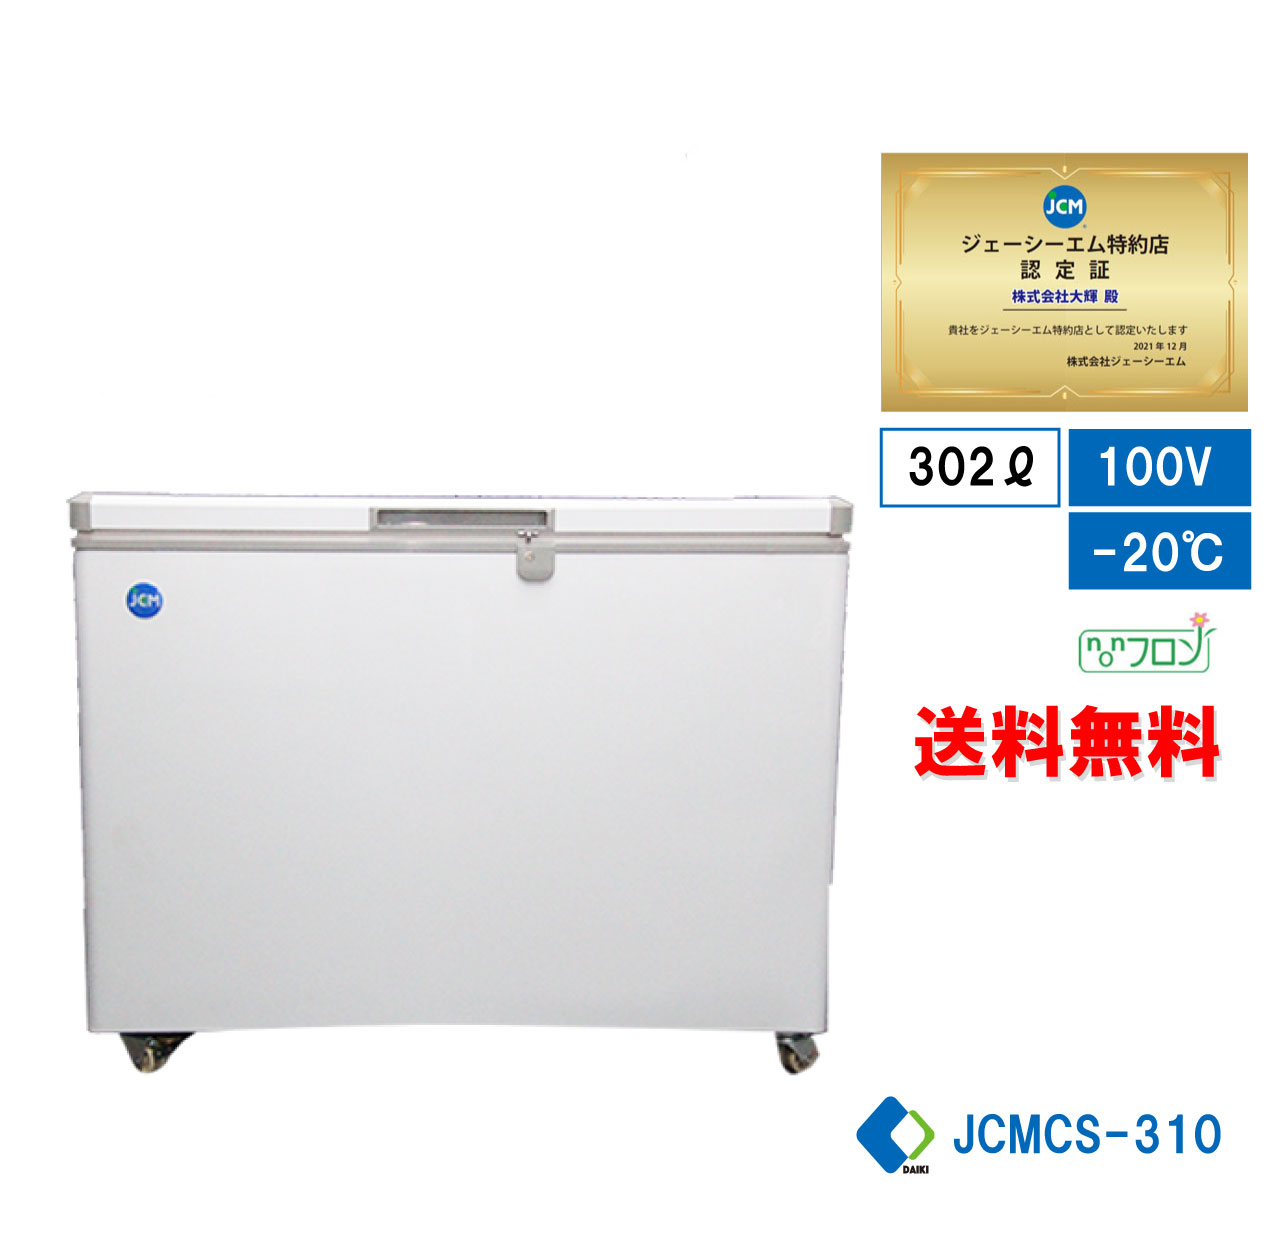 冷凍ストッカー 冷凍庫 保冷庫 業務用冷凍庫 フリーザー JCMC-310 